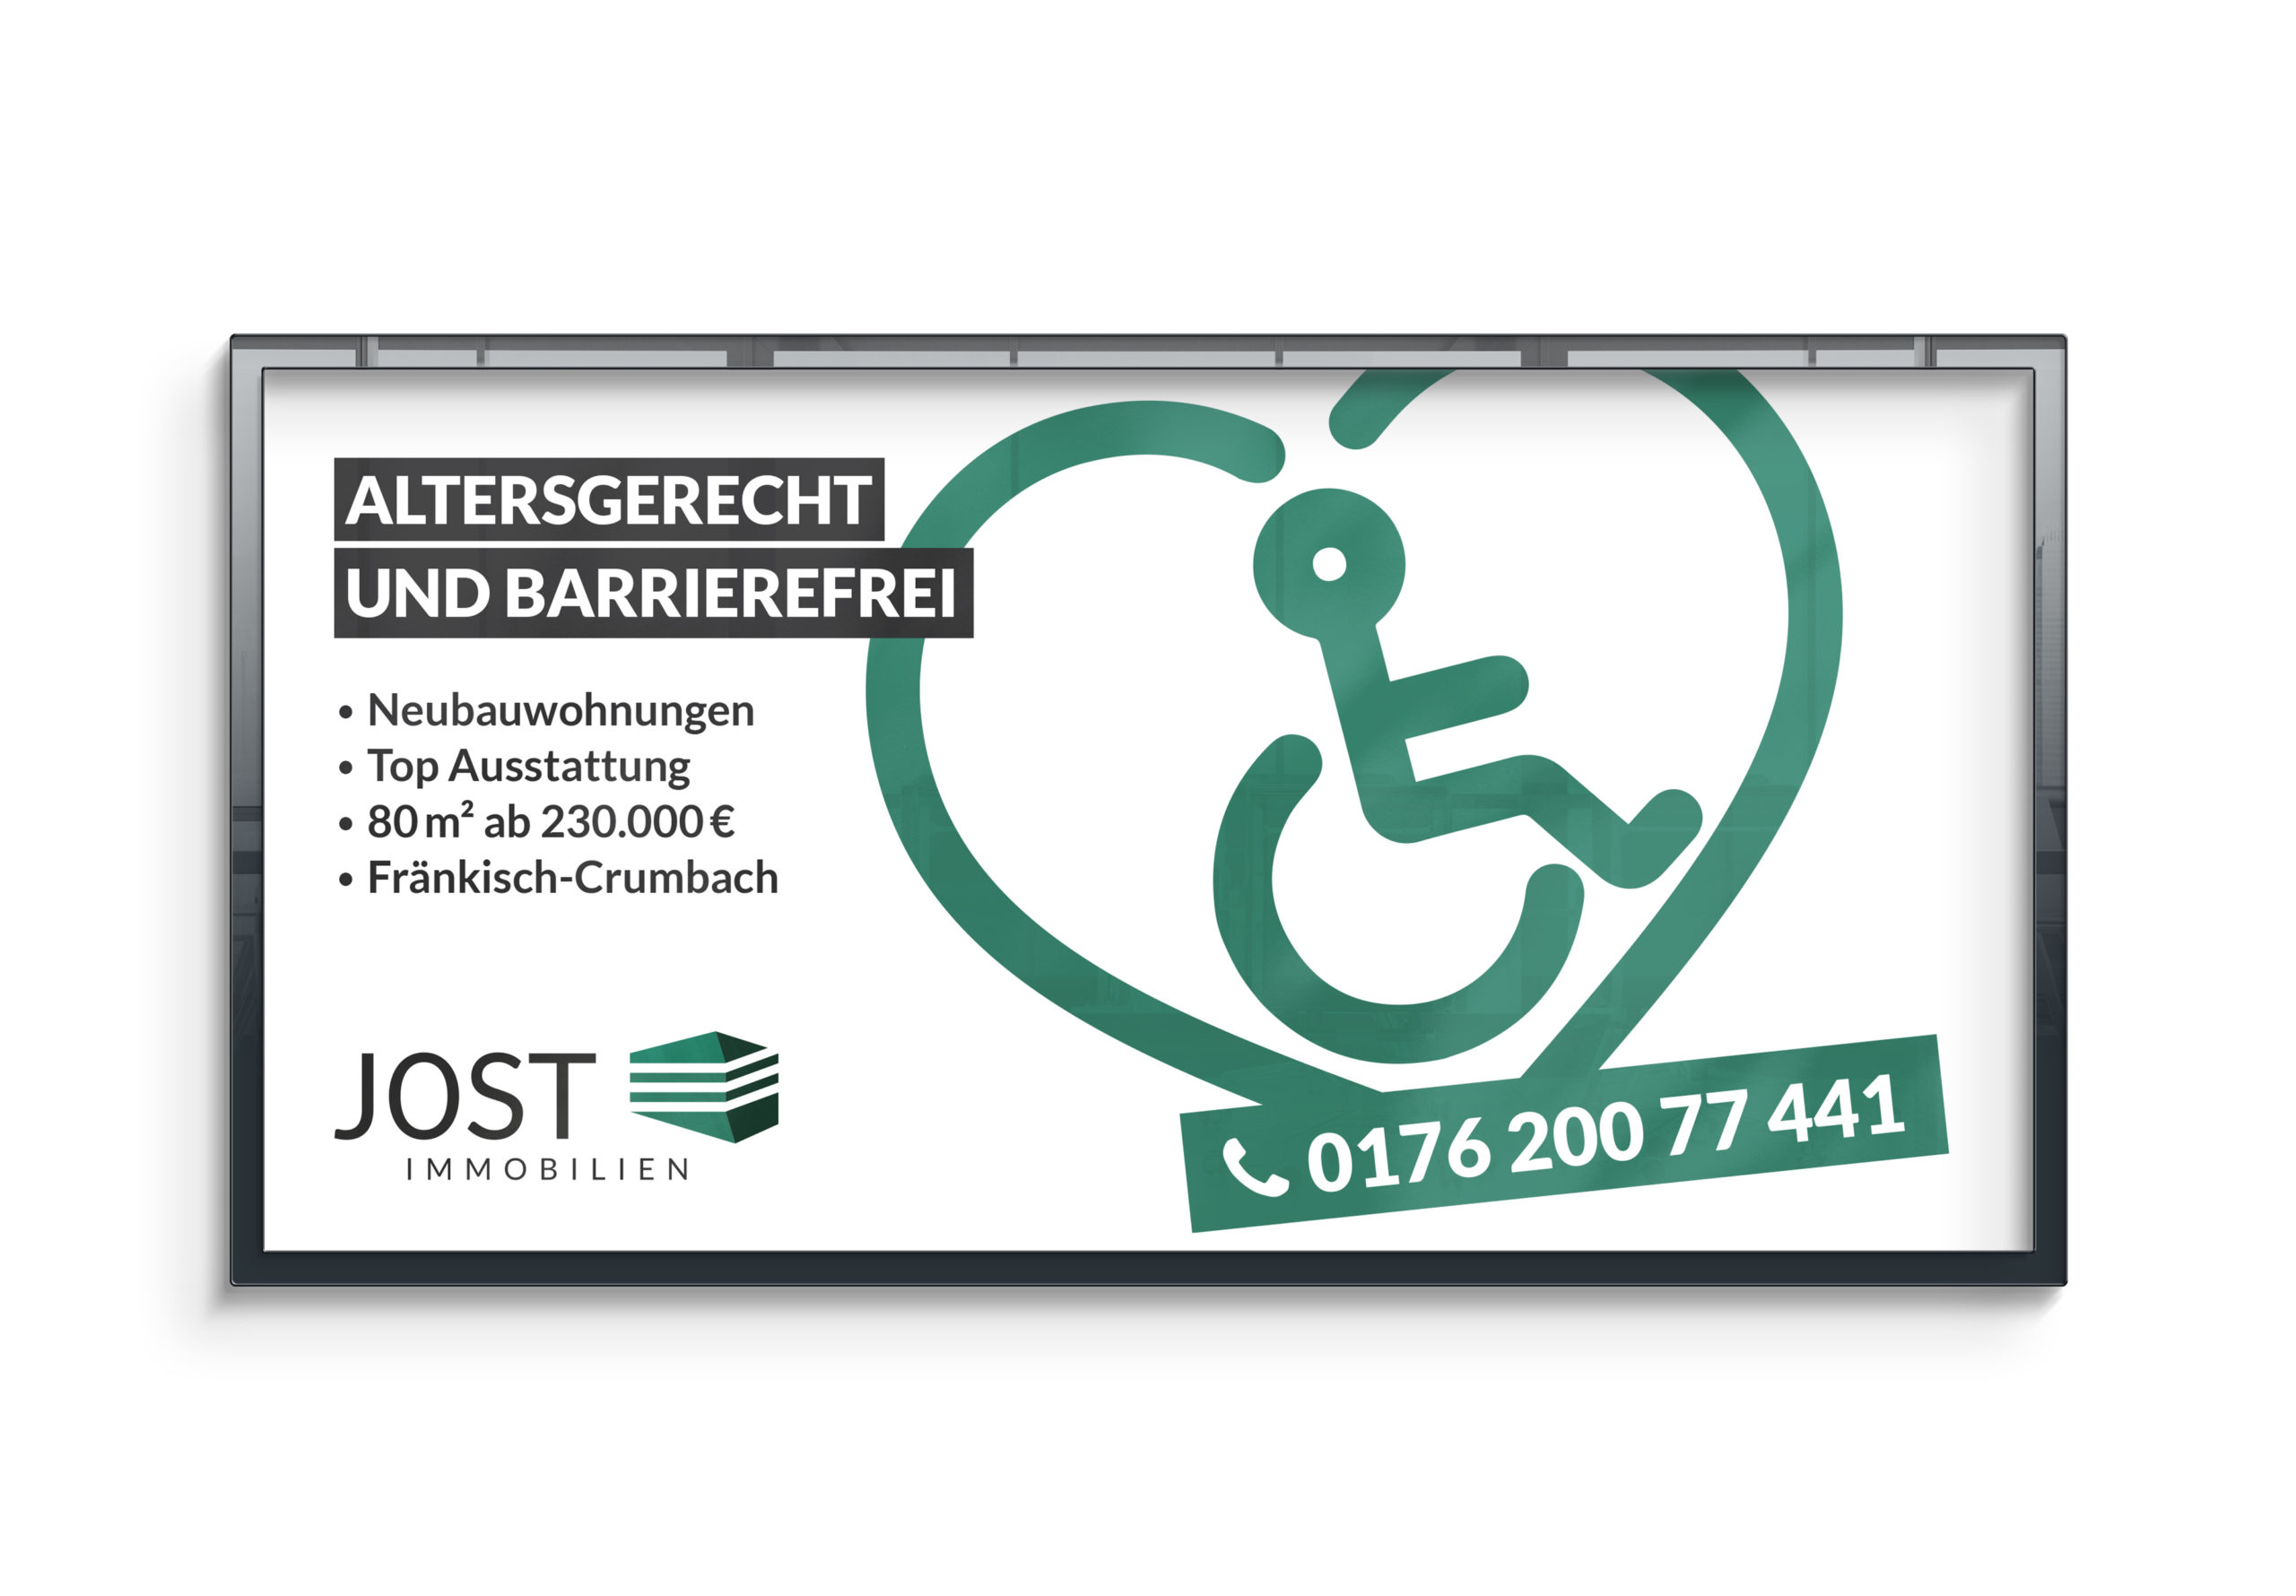 Werbebanner von Jost mit Aufschrift "altersgerecht und barrierefrei", einem grünen Herz mit Rollstuhfahrer-Illustration, Telefonnummer und Logo von Jost